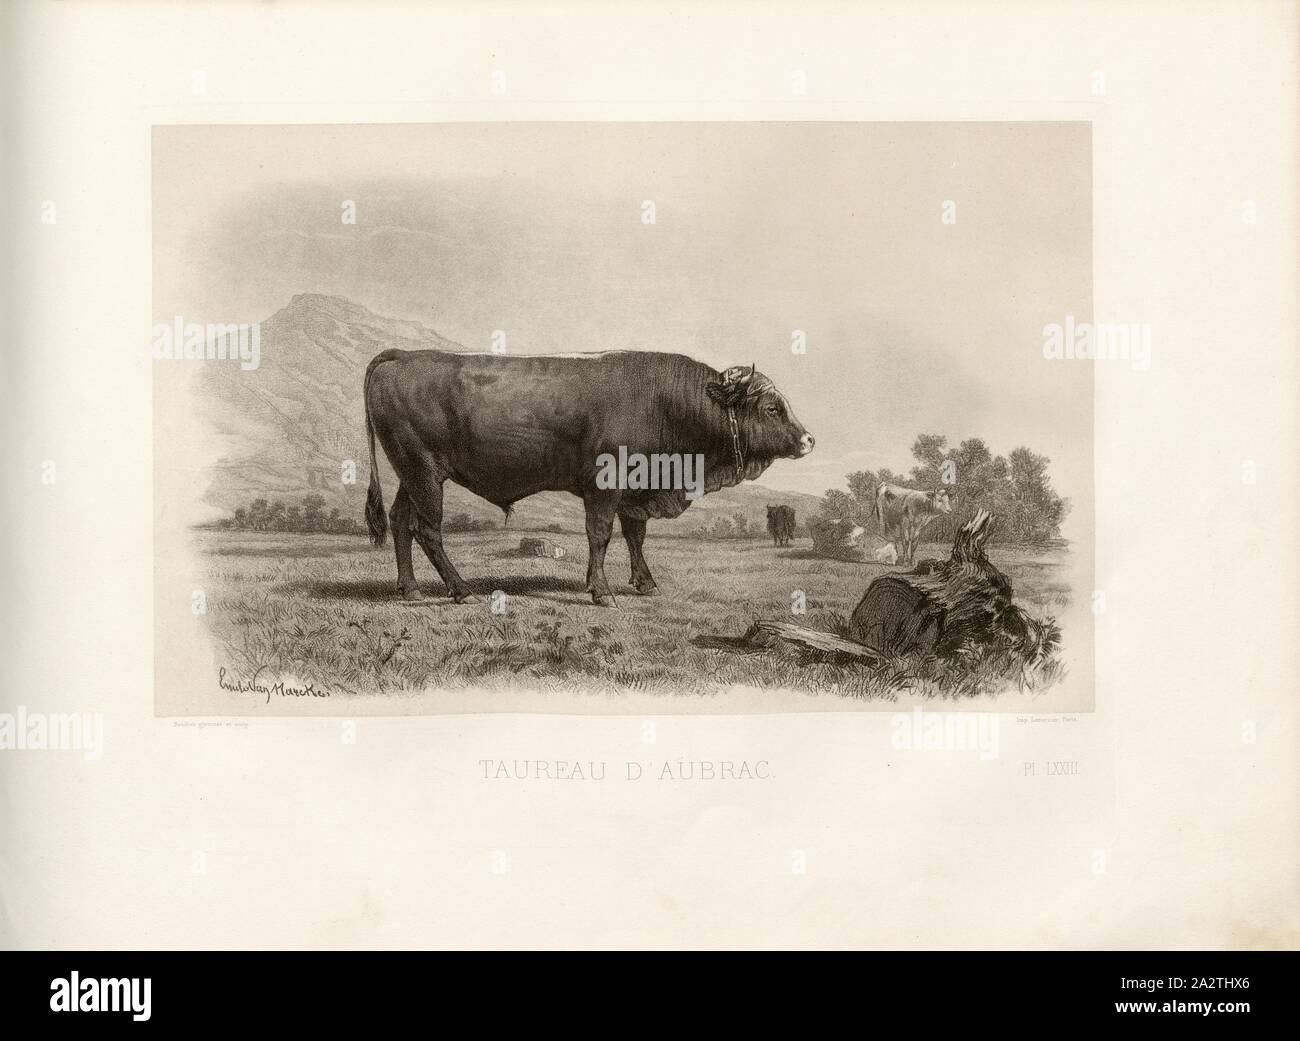 Taurus of Aubrac, French cattle breed, bull, signed: Emile Van Marcke; Baudran glymmate., et sculp, Pl. LXXIII, S. 165, Marcke, Emile van; Baudran (glymmat. et sc.), Emile Baudement: Les races bovines au concours universel agricole de Paris en 1856: études zootechniques. Bd. 2. Paris: Imprimerie Impériale, MDCCCLXI [1861 Stock Photo